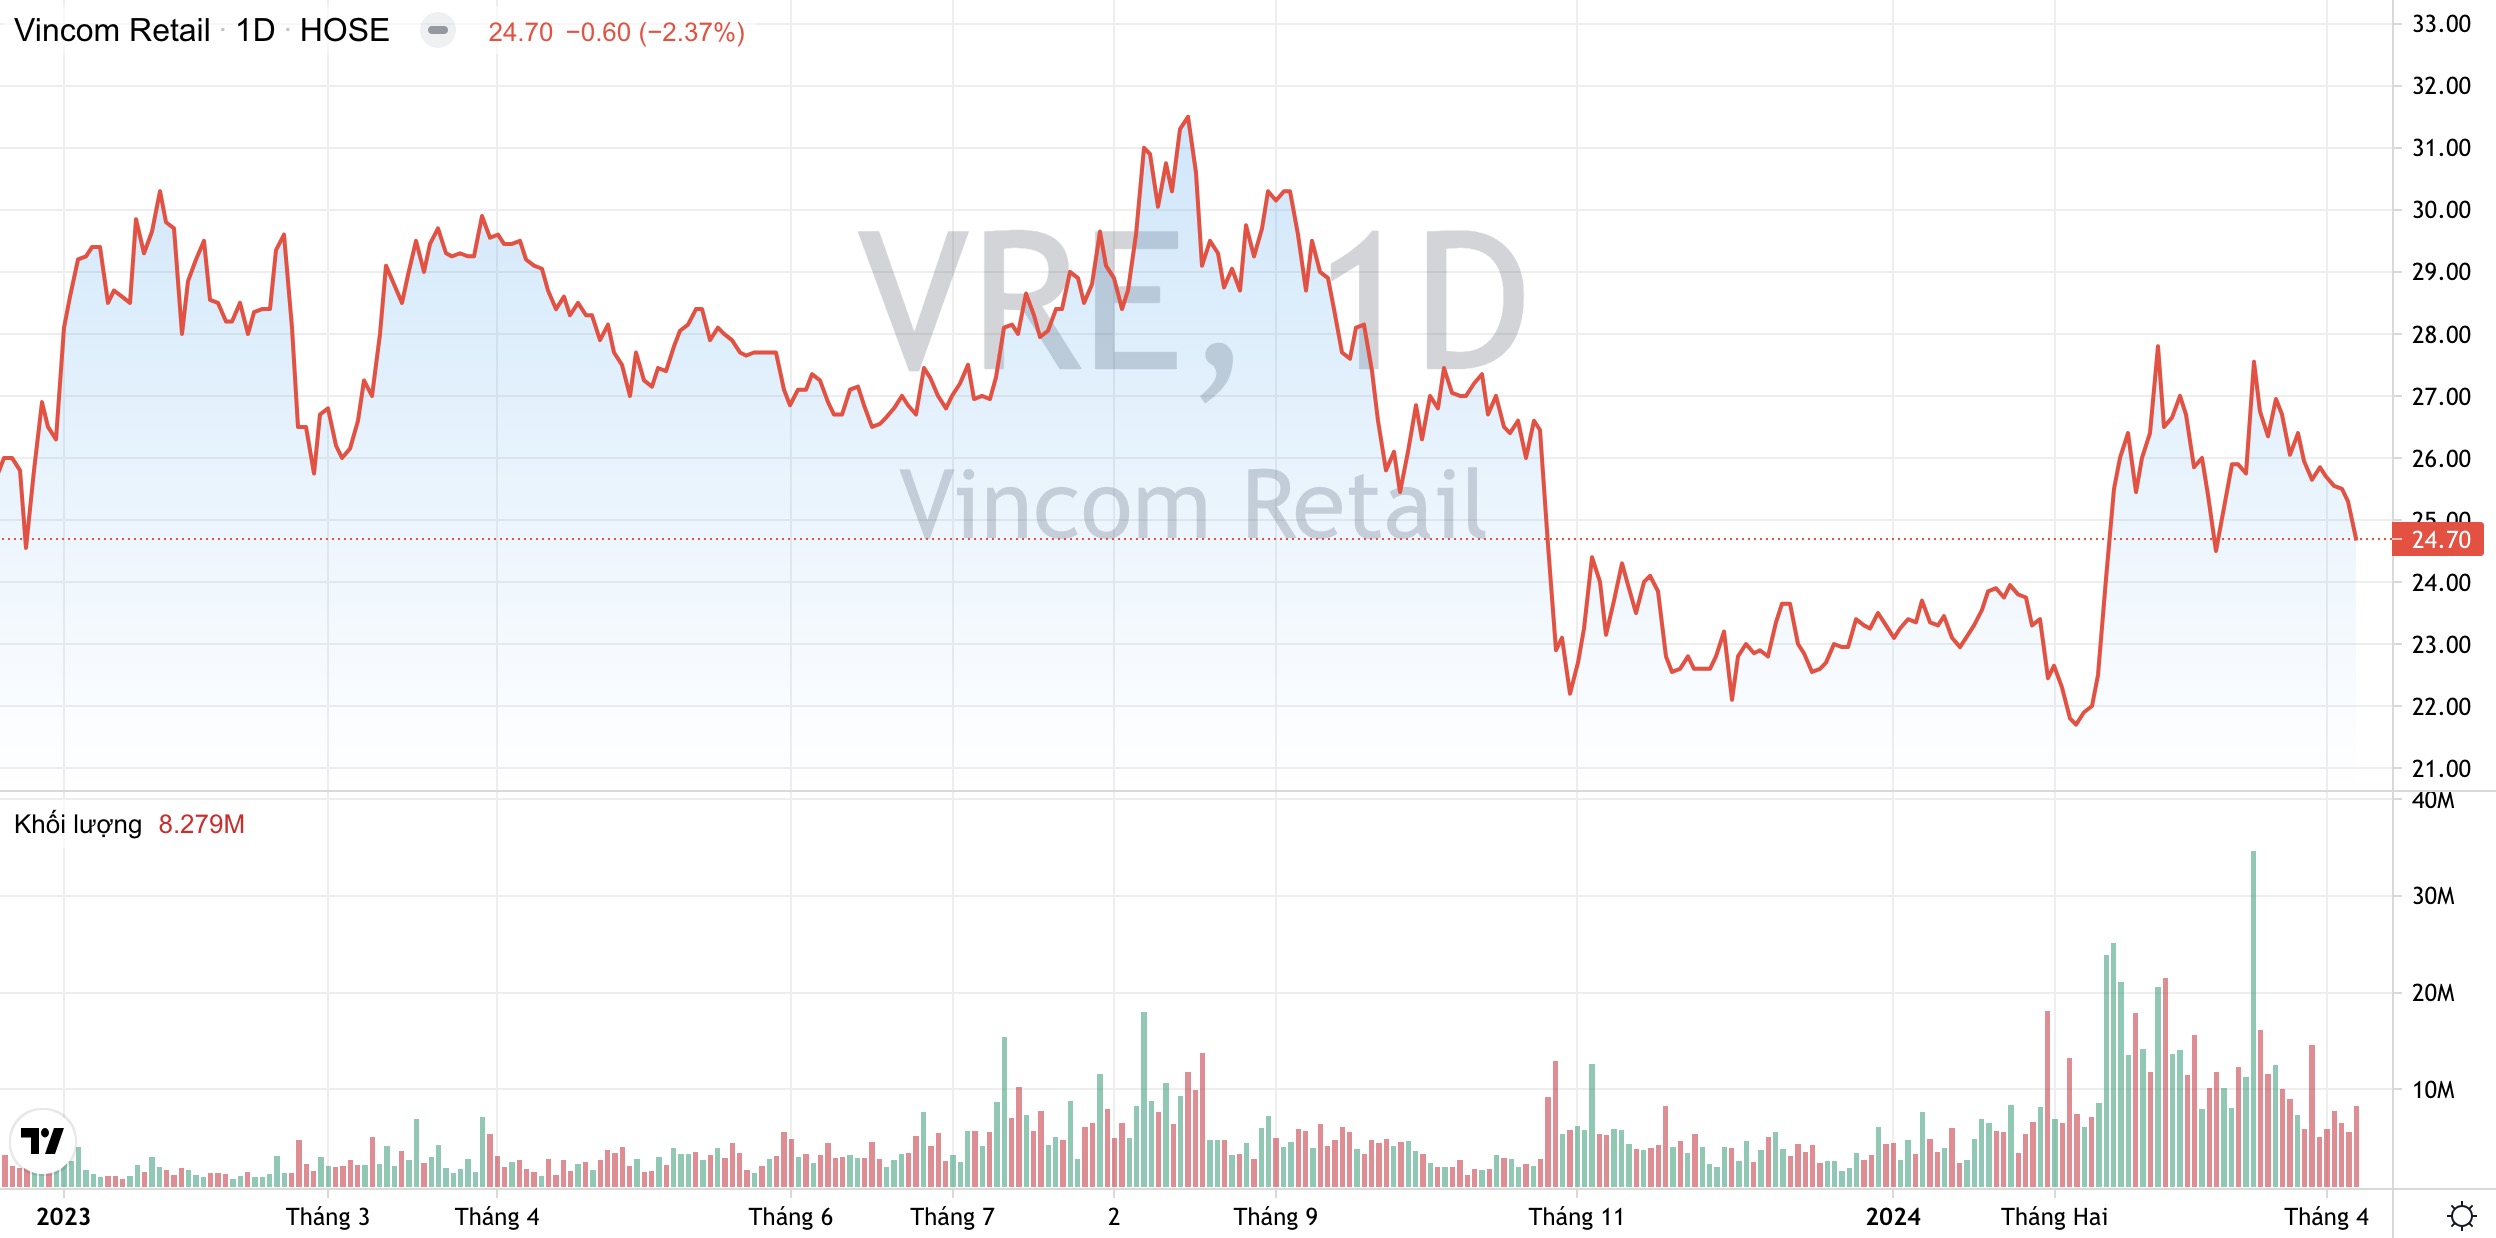 Lộ diện chủ nhân mới của Vincom Retail VRE sau khi Tập đoàn Vingroup thoái vốn 2